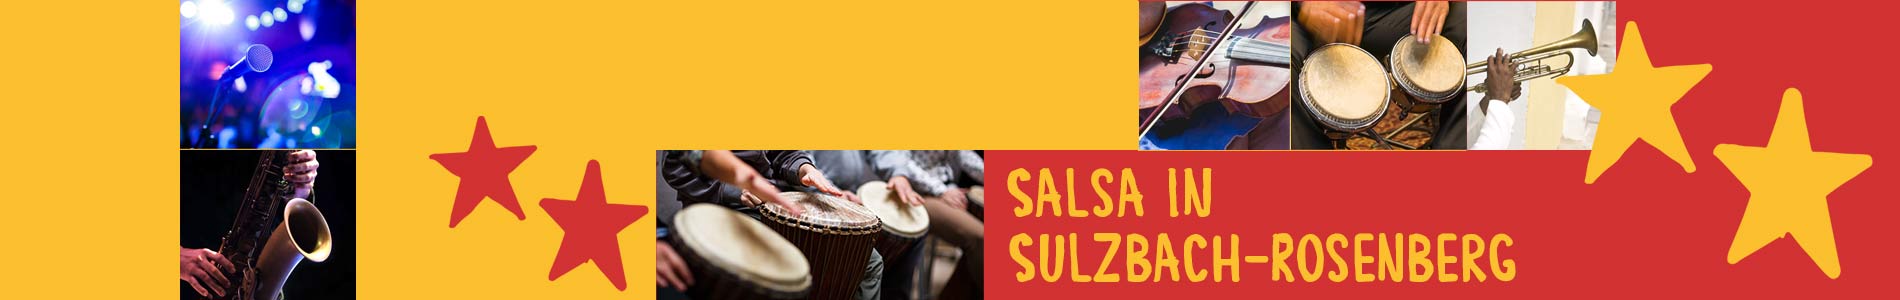 Salsa in Sulzbach-Rosenberg – Salsa lernen und tanzen, Tanzkurse, Partys, Veranstaltungen